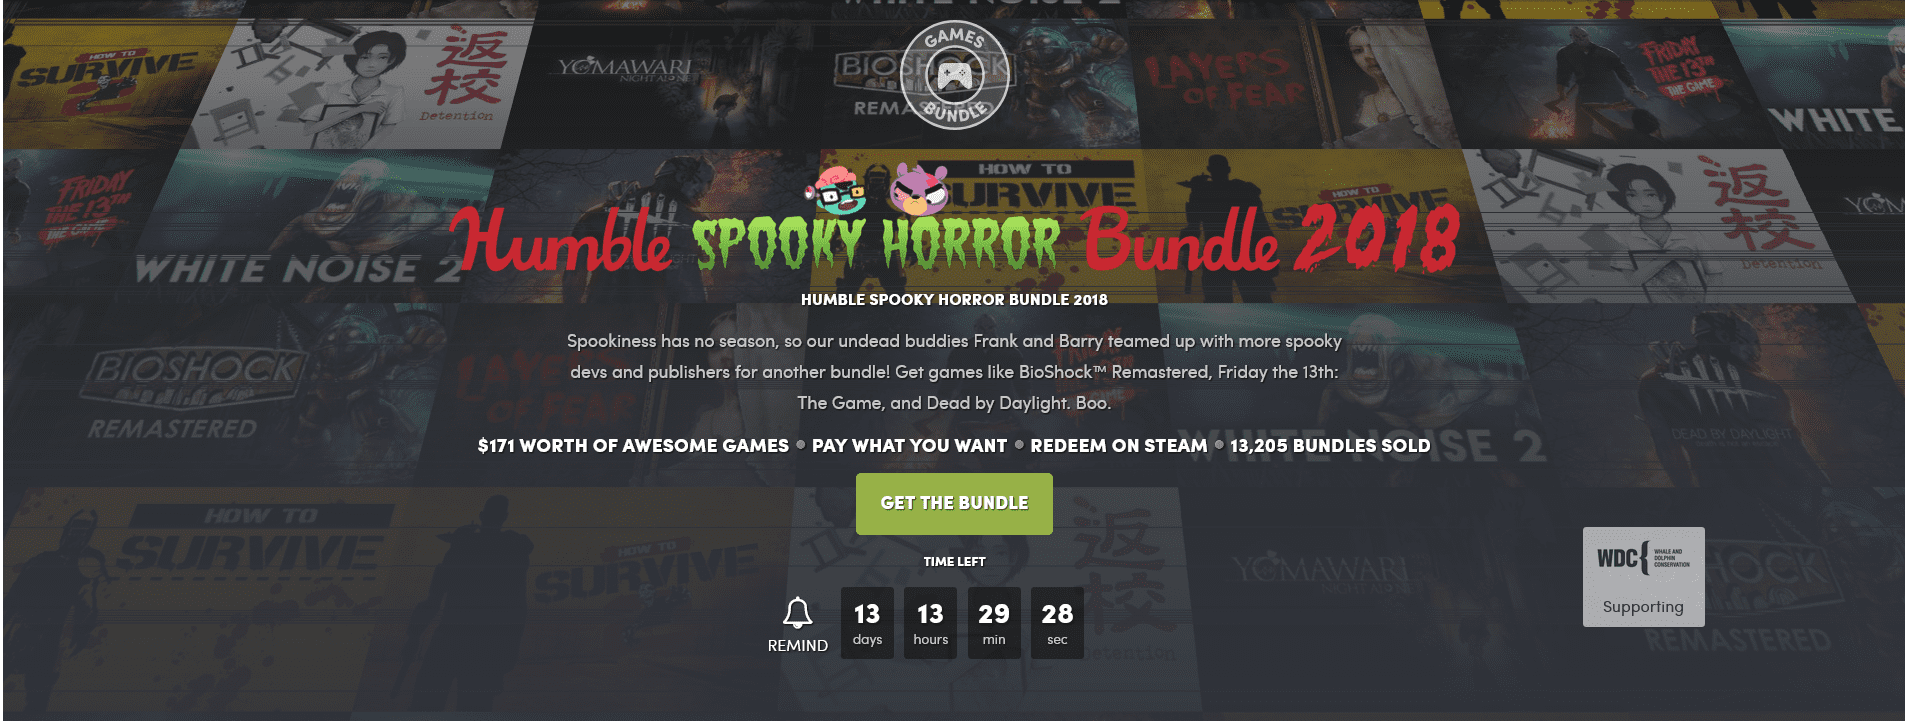 Humble Bundle’s Humble Spooky Horror Bundle